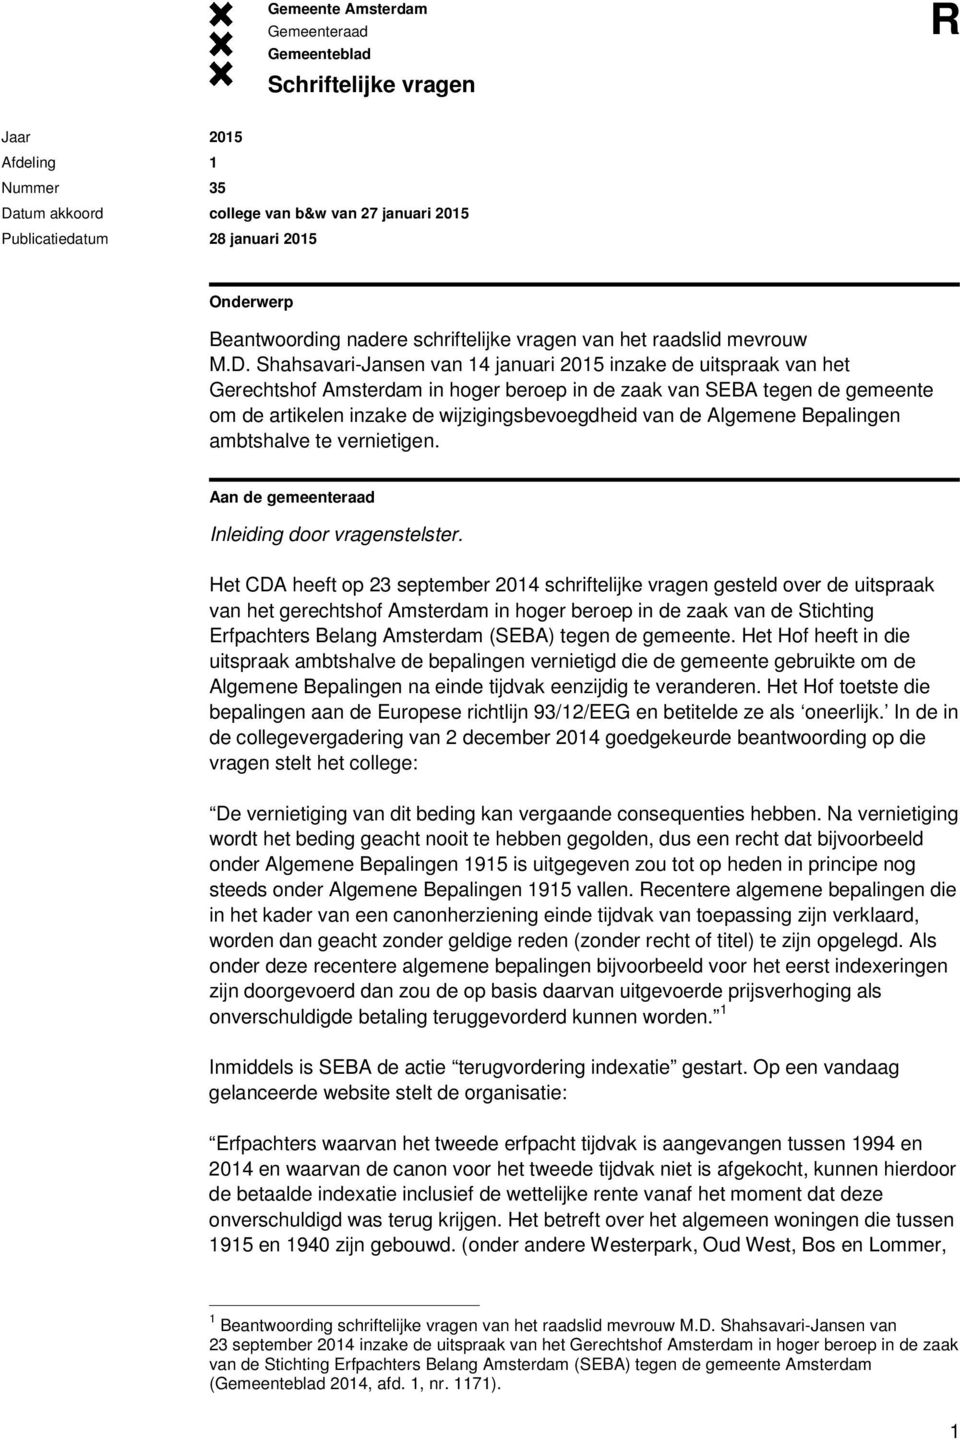 Shahsavari-Jansen van 14 januari 2015 inzake de uitspraak van het Gerechtshof Amsterdam in hoger beroep in de zaak van SEBA tegen de gemeente om de artikelen inzake de wijzigingsbevoegdheid van de